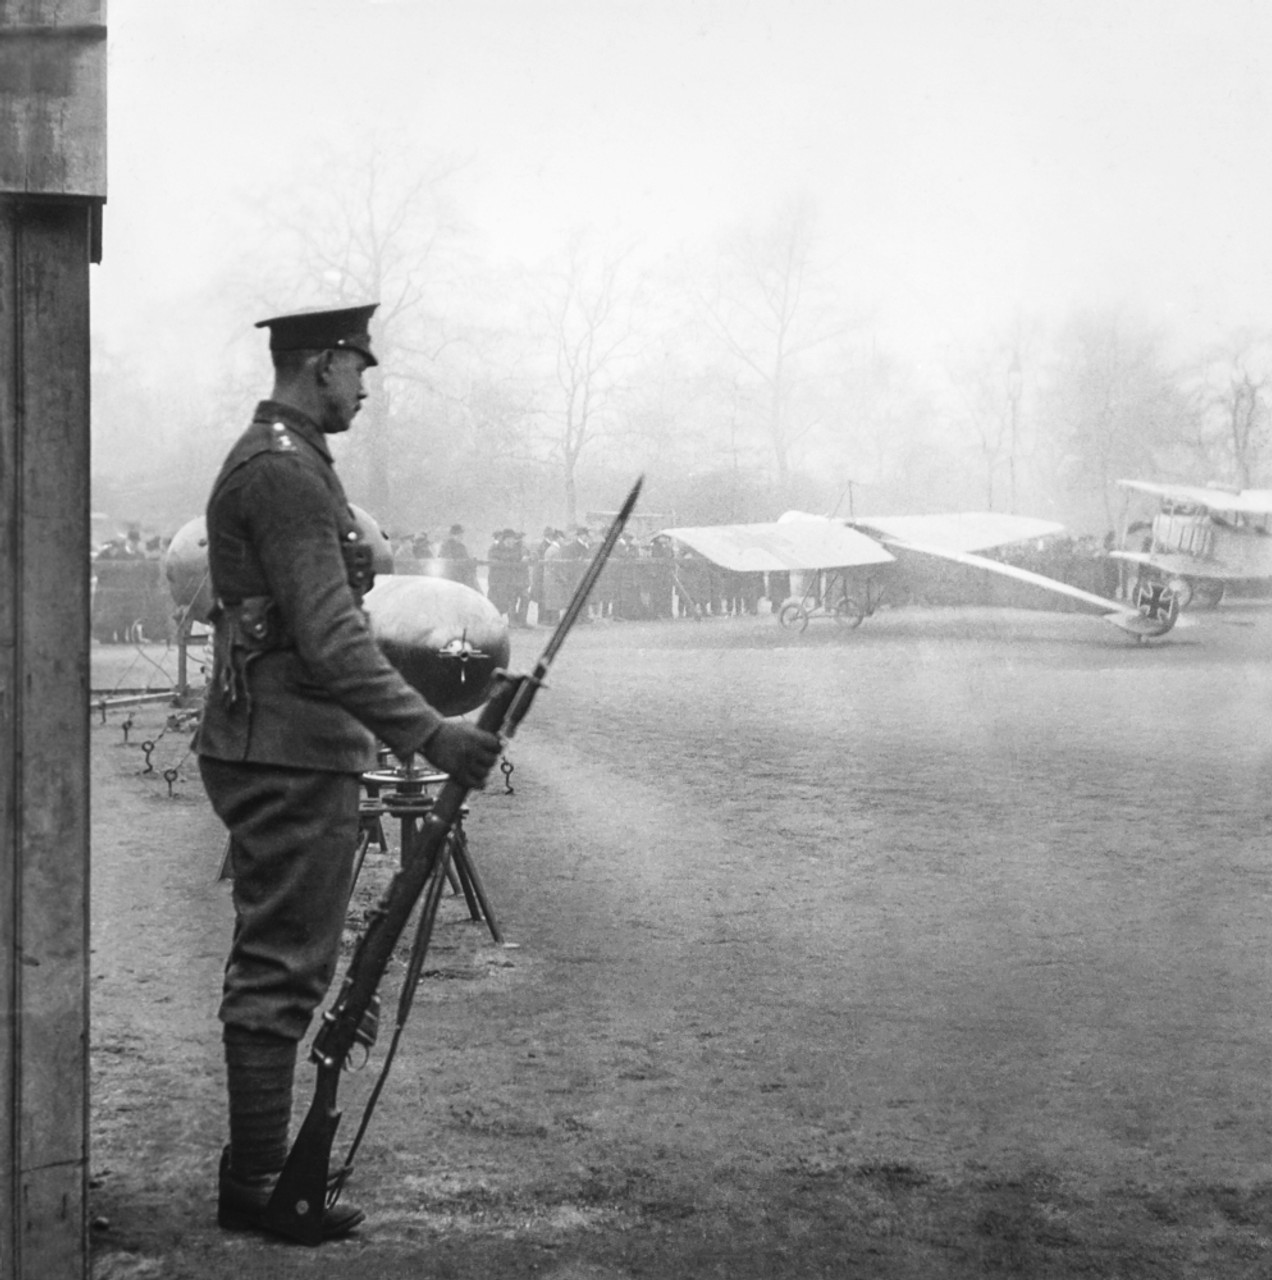 Magic lantern slide WW1 1914-1918 World war one images Soldier standing  guard Standing a gun